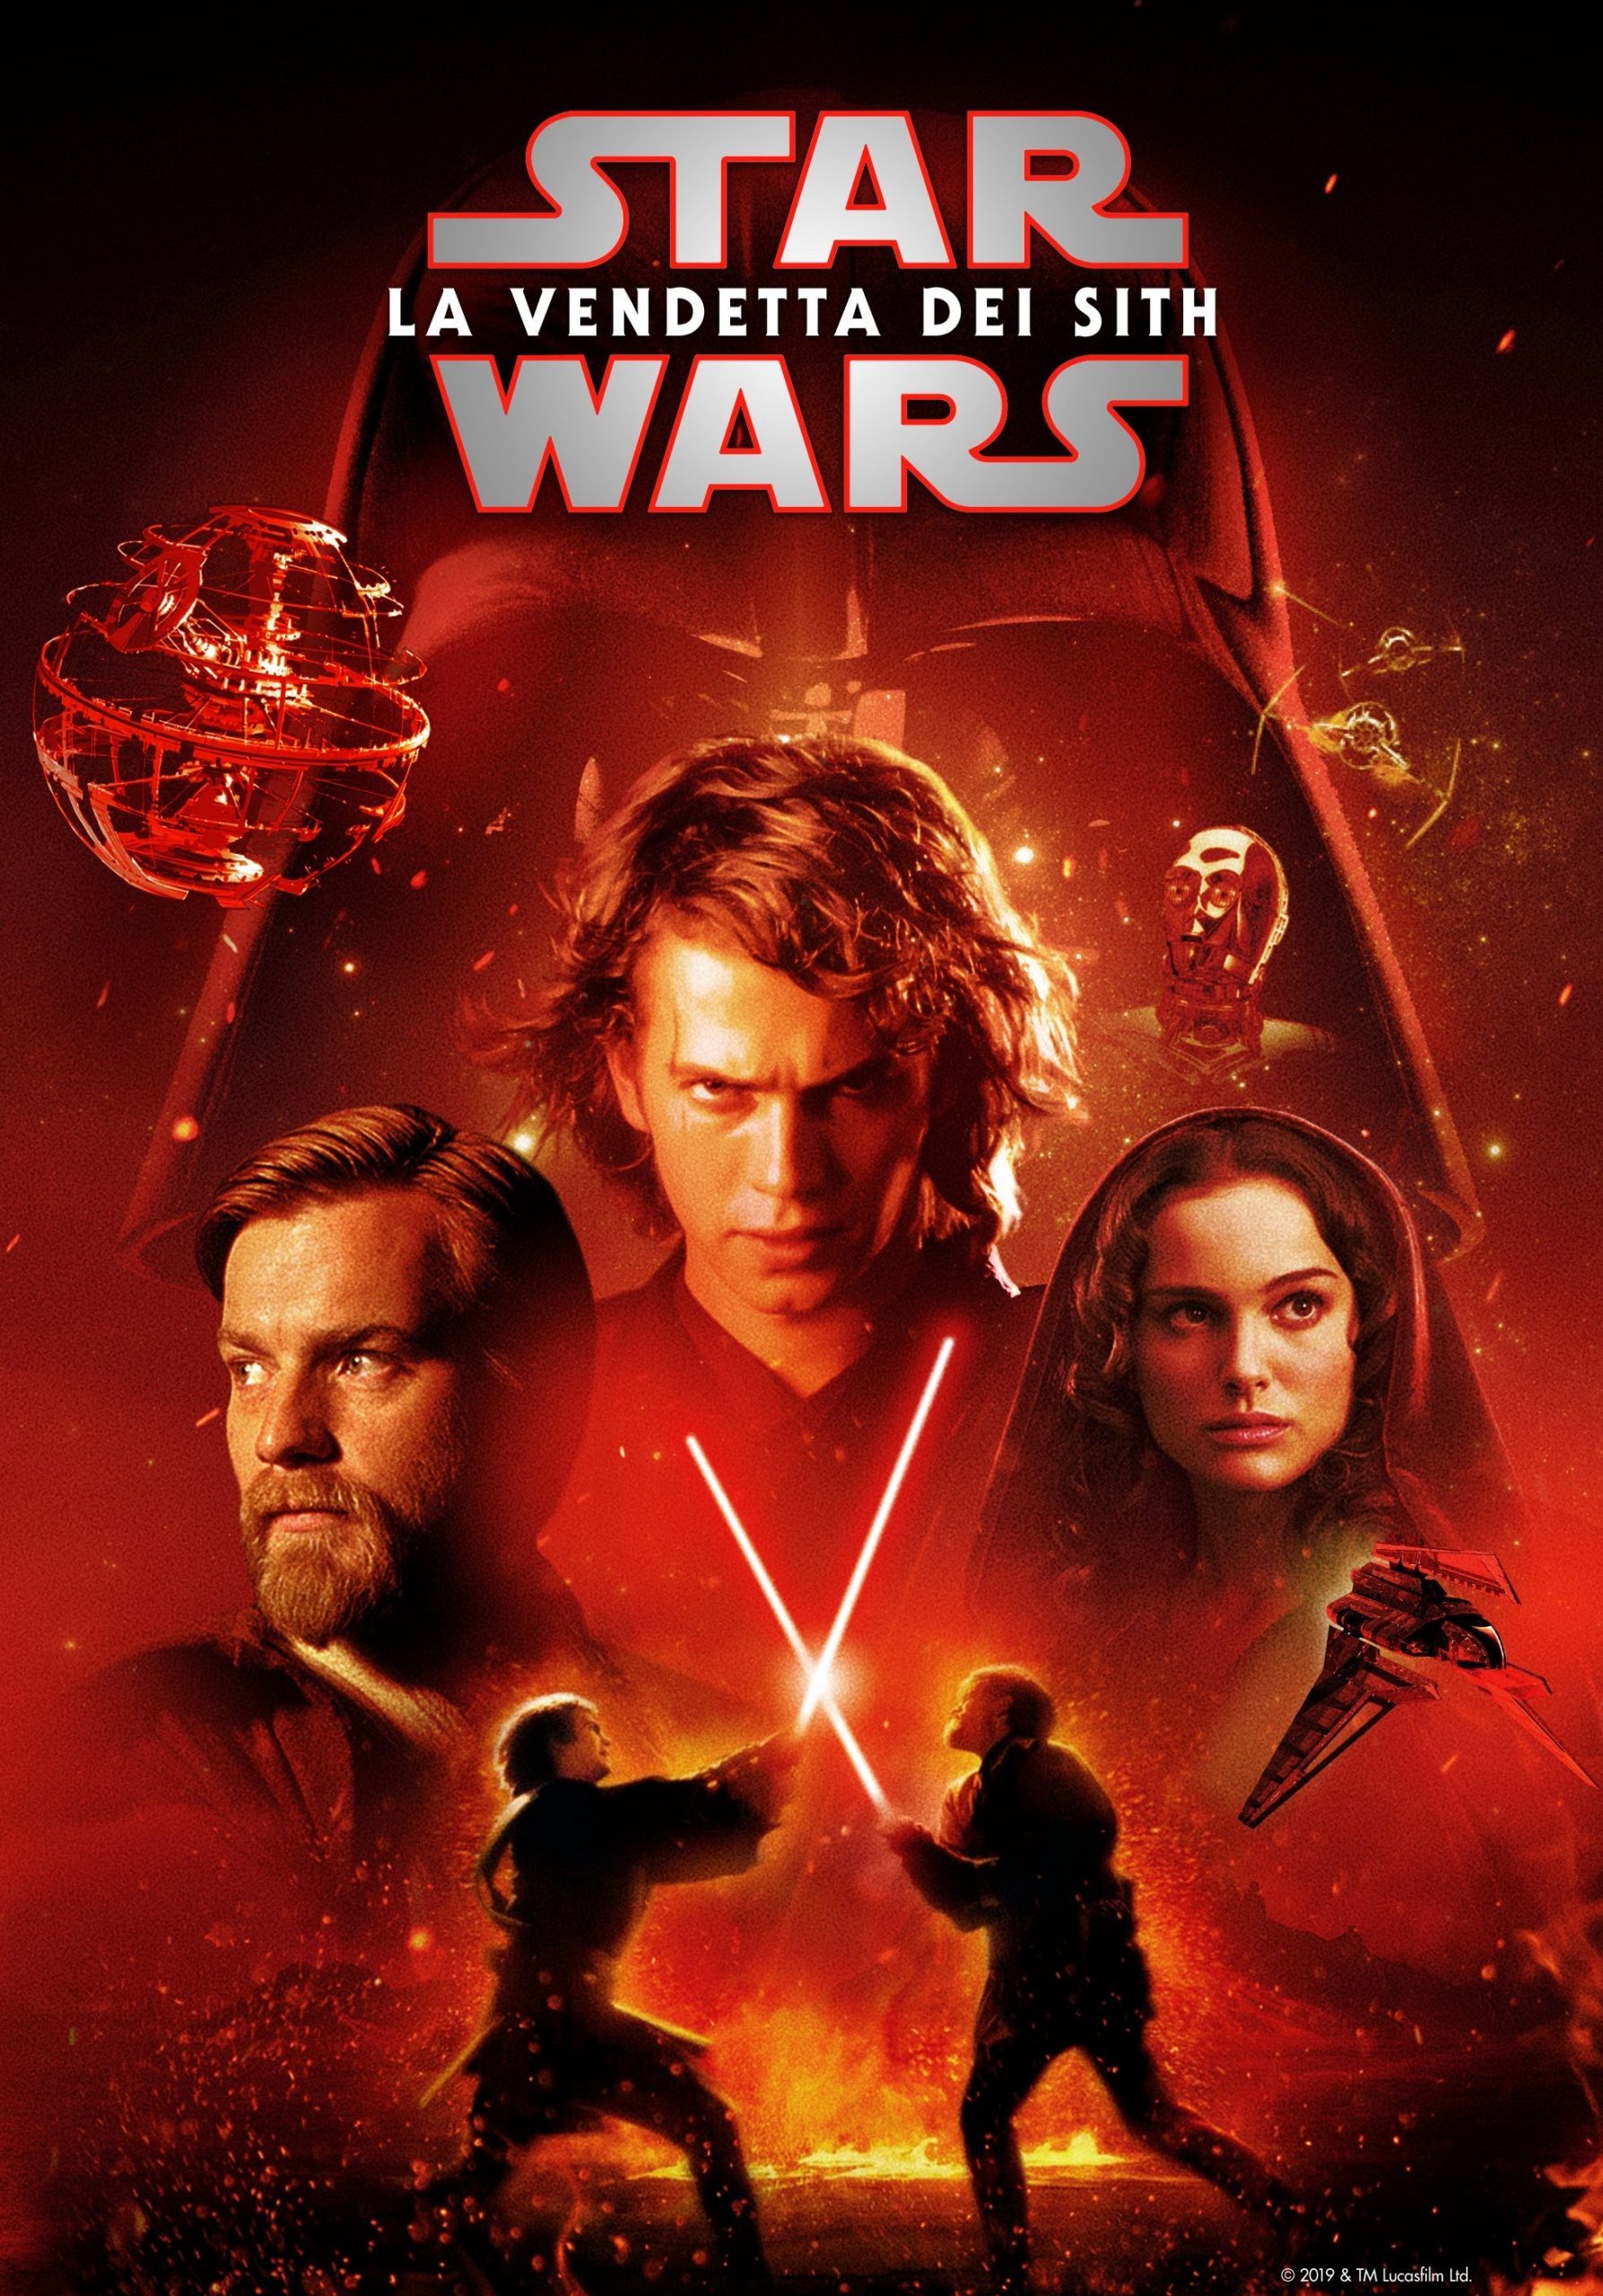 Star Wars: Episodio III – La vendetta dei Sith [HD] (2005)